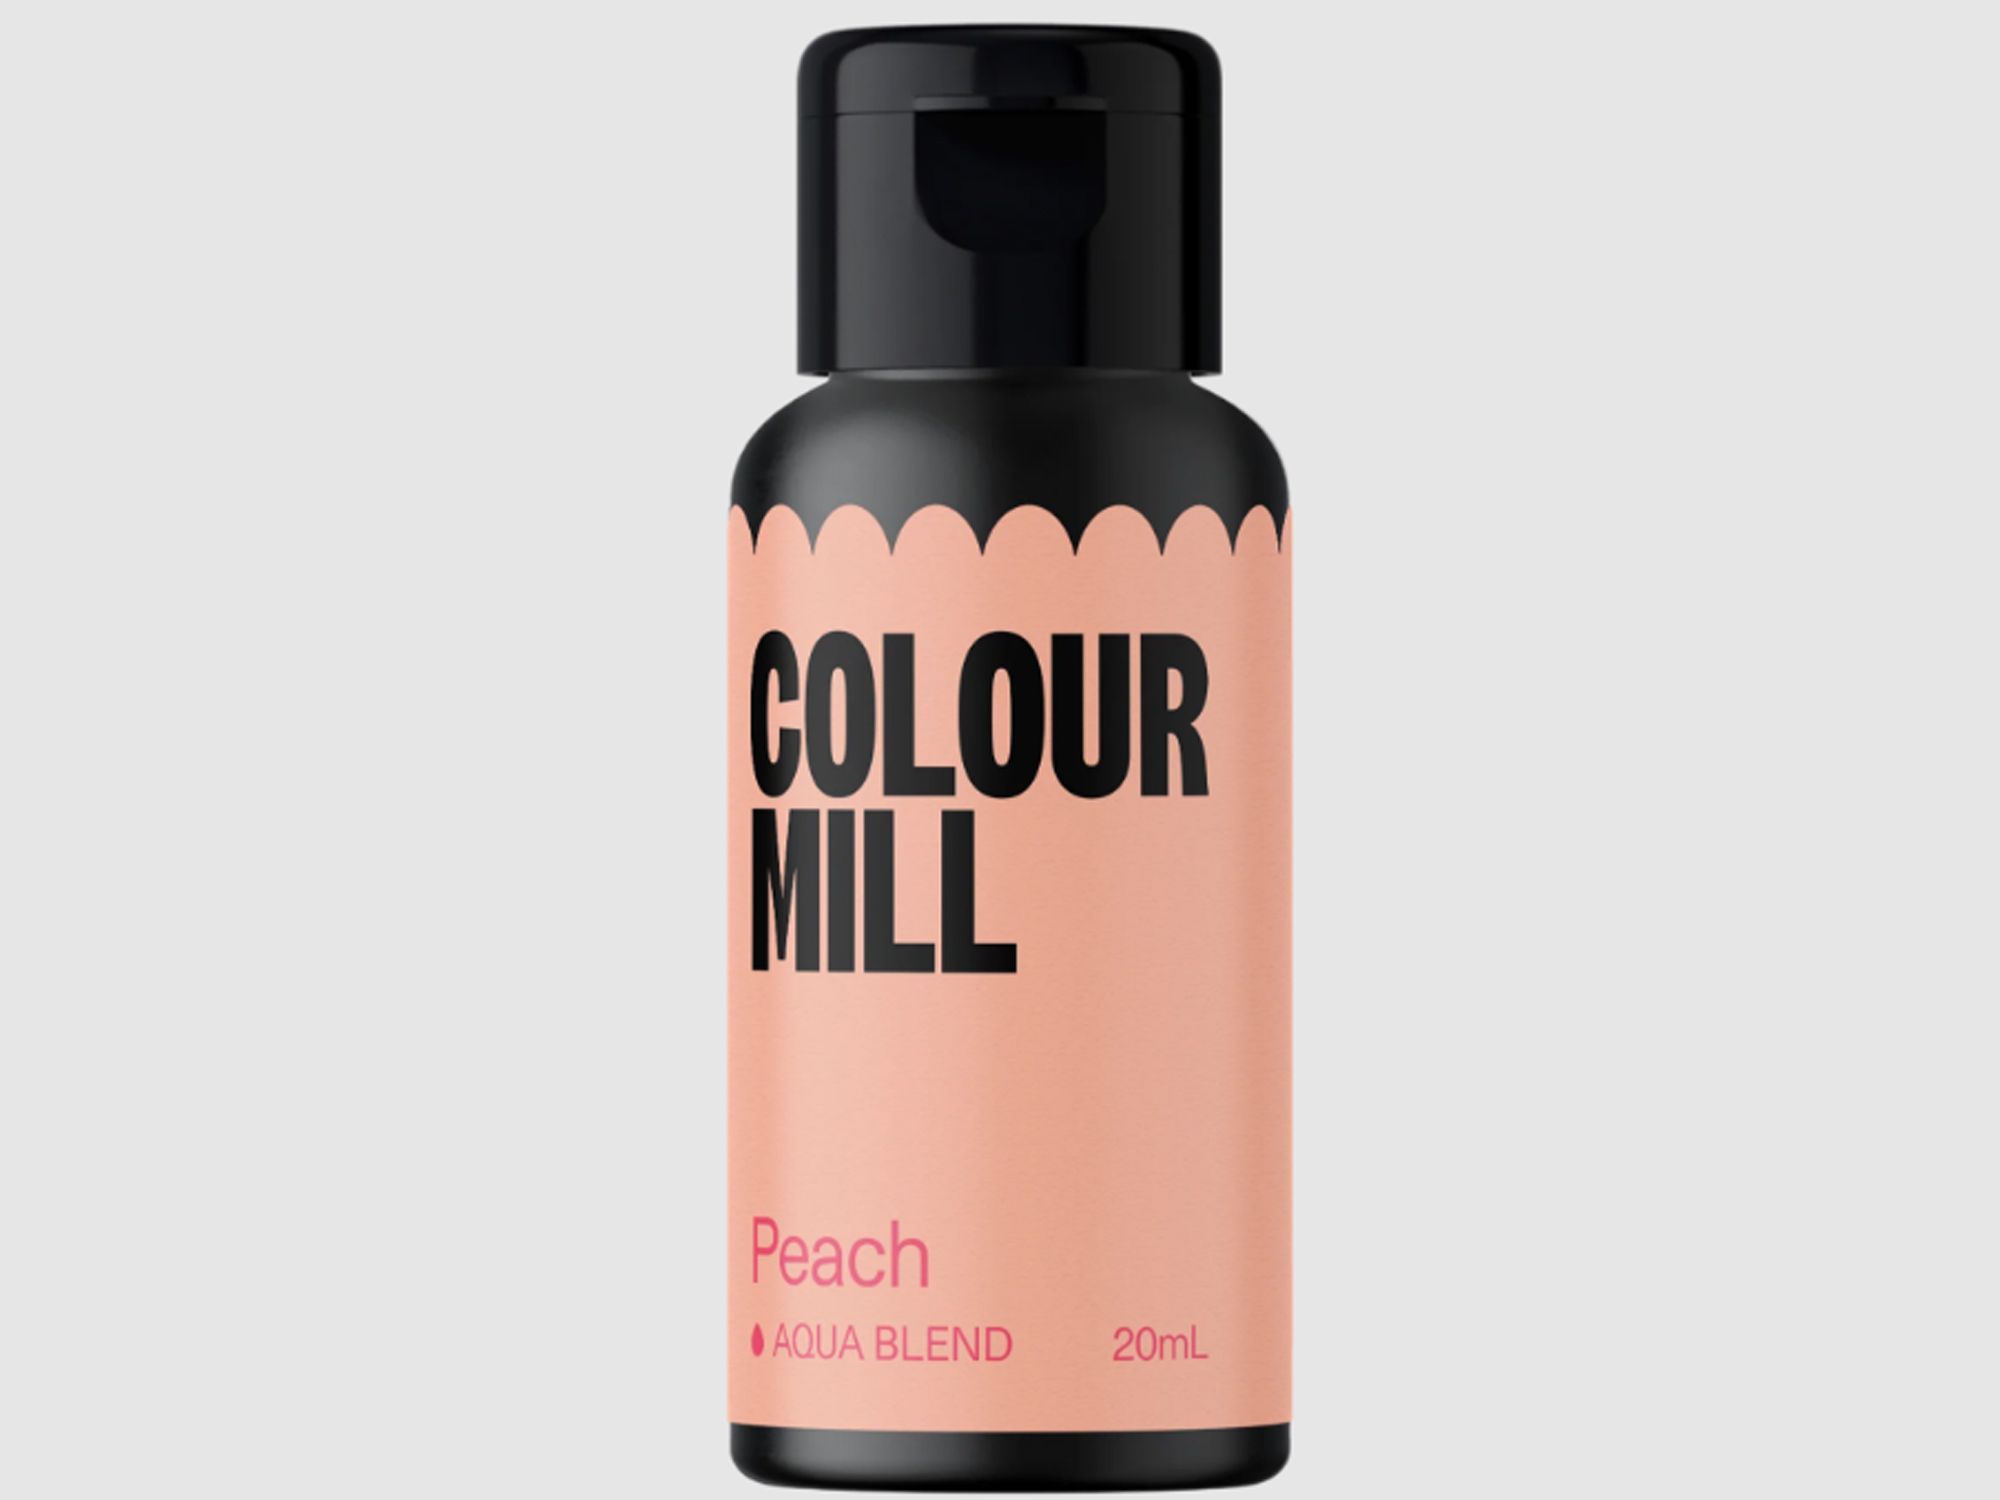 Colour Mill Peach (Aqua Blend) 20ml